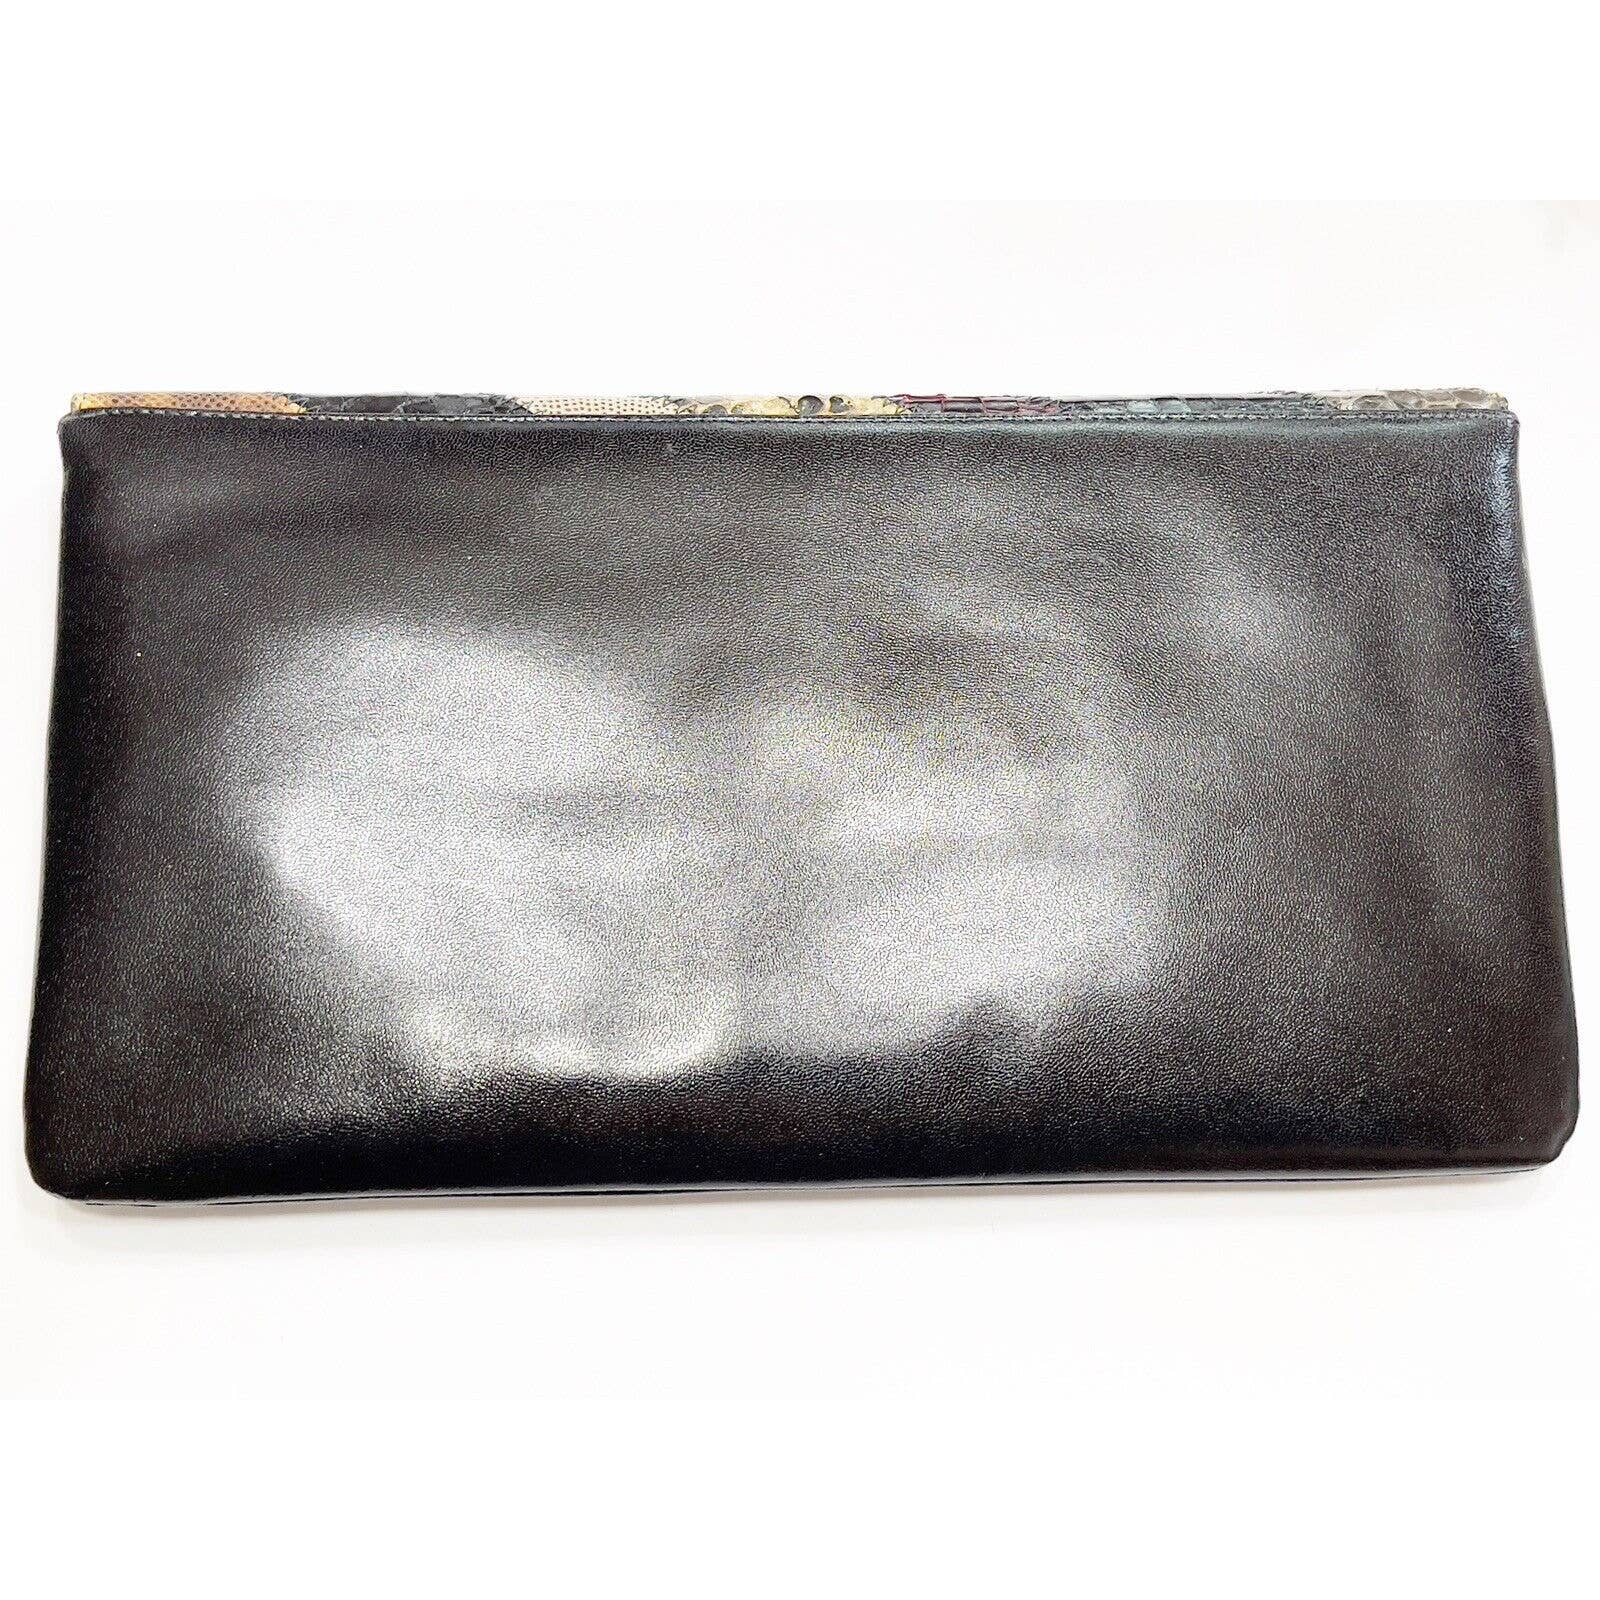 Bags by SupremeBags By Supreme Patchwork Snakeskin Black Clutch Shoulder Handbag RARE Excellent - Black Dog Vintage